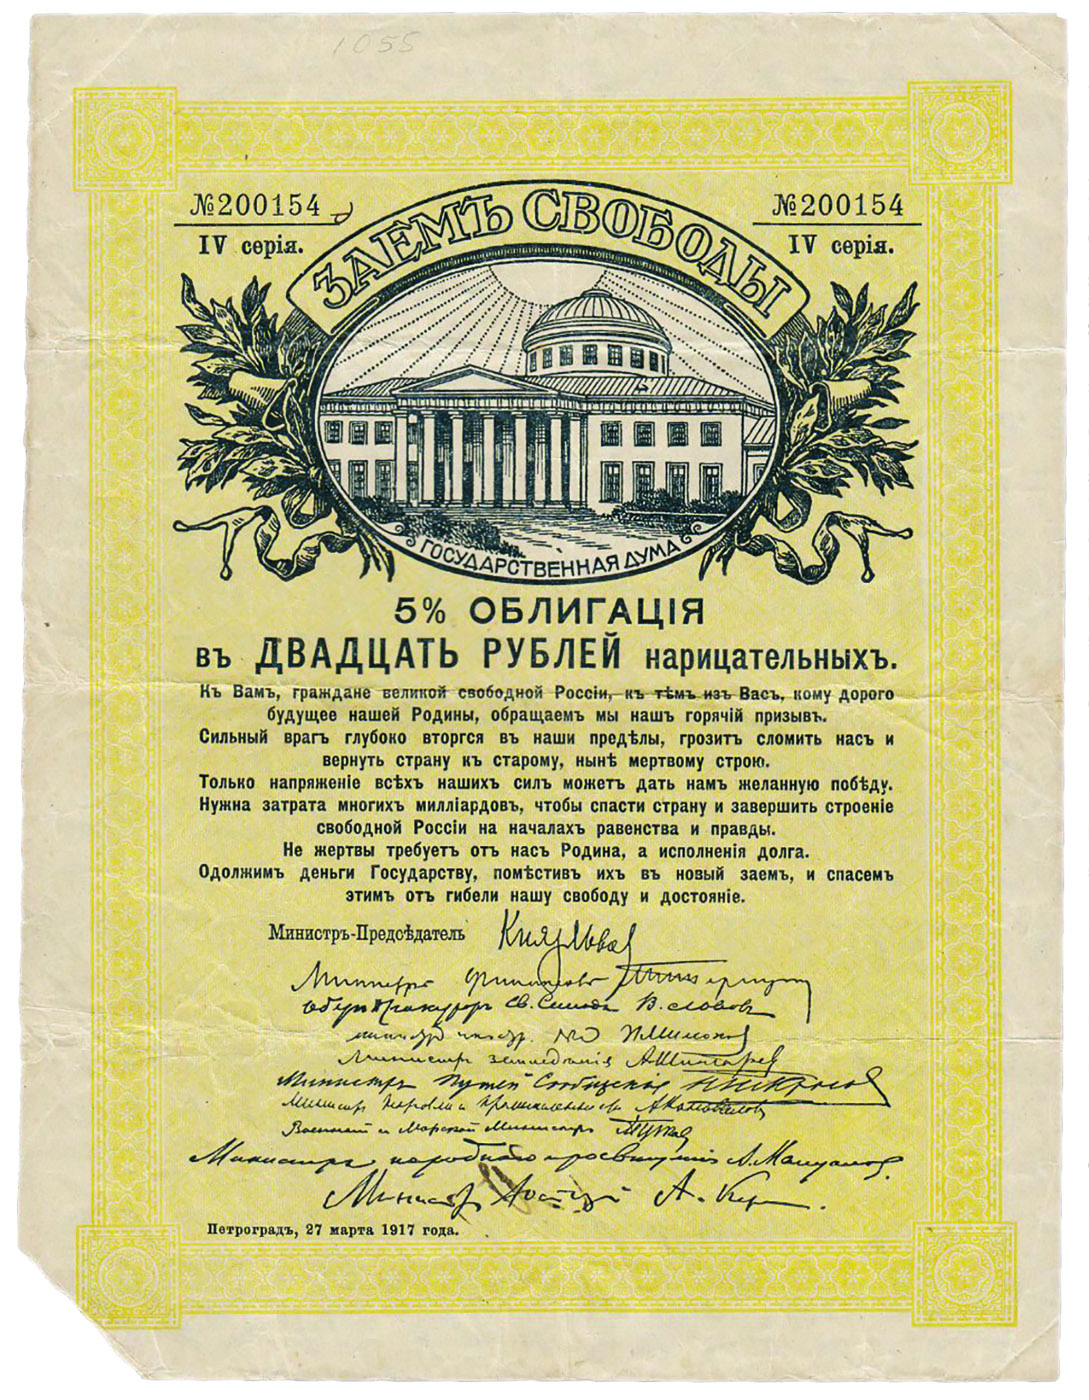 5% облигация Временного правительства номиналом 20 рублей «Заем Свободы», 1917 г.